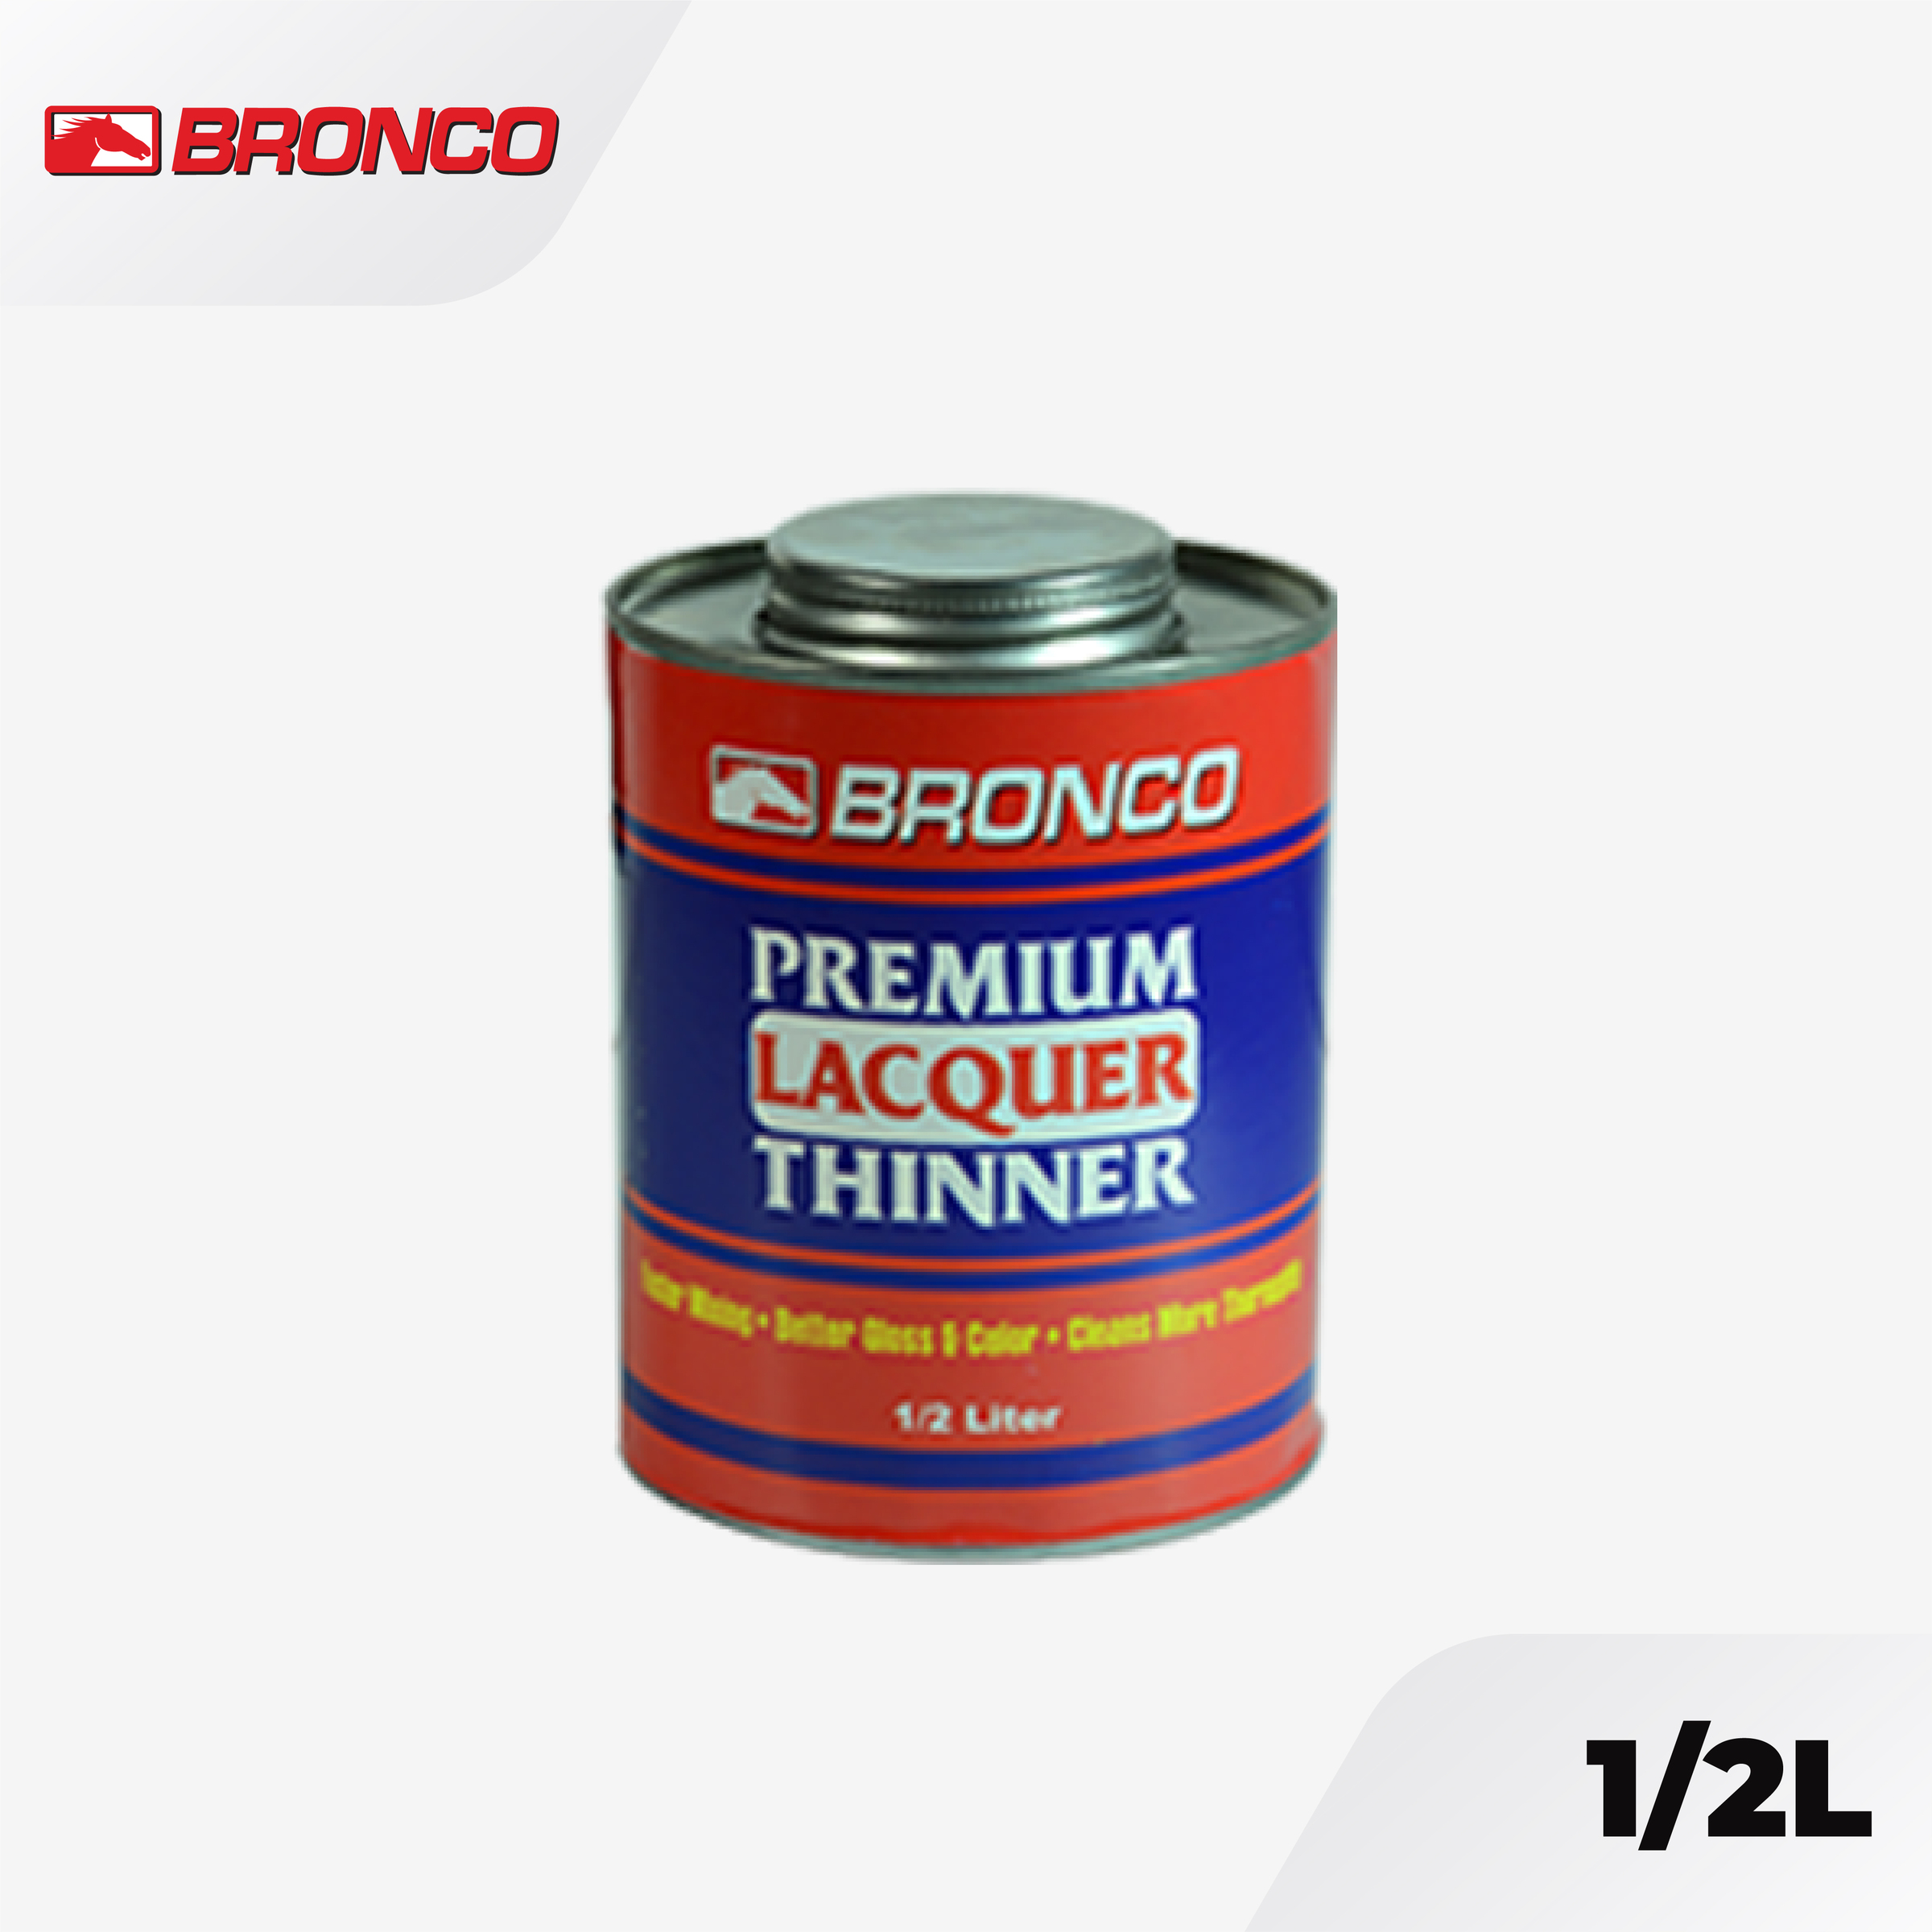 Bronco Premium Lacquer Thinner - 1/2L